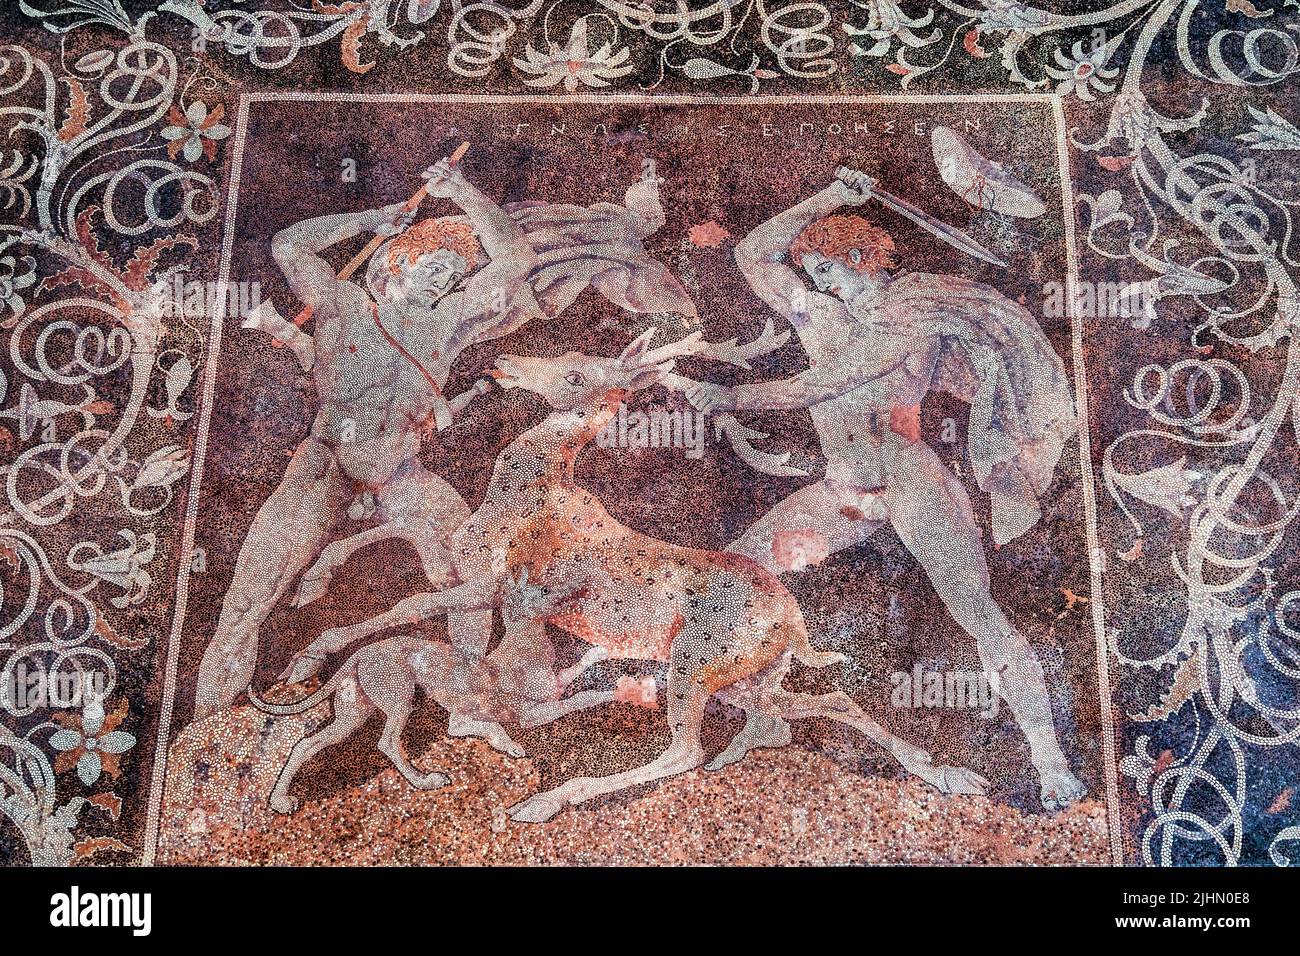 El 'Stag Hunt' (siglo 4th aC), uno de los suelos de mosaico más impresionantes en el Museo Arqueológico de Pella, Macedonia, Grecia. Foto de stock